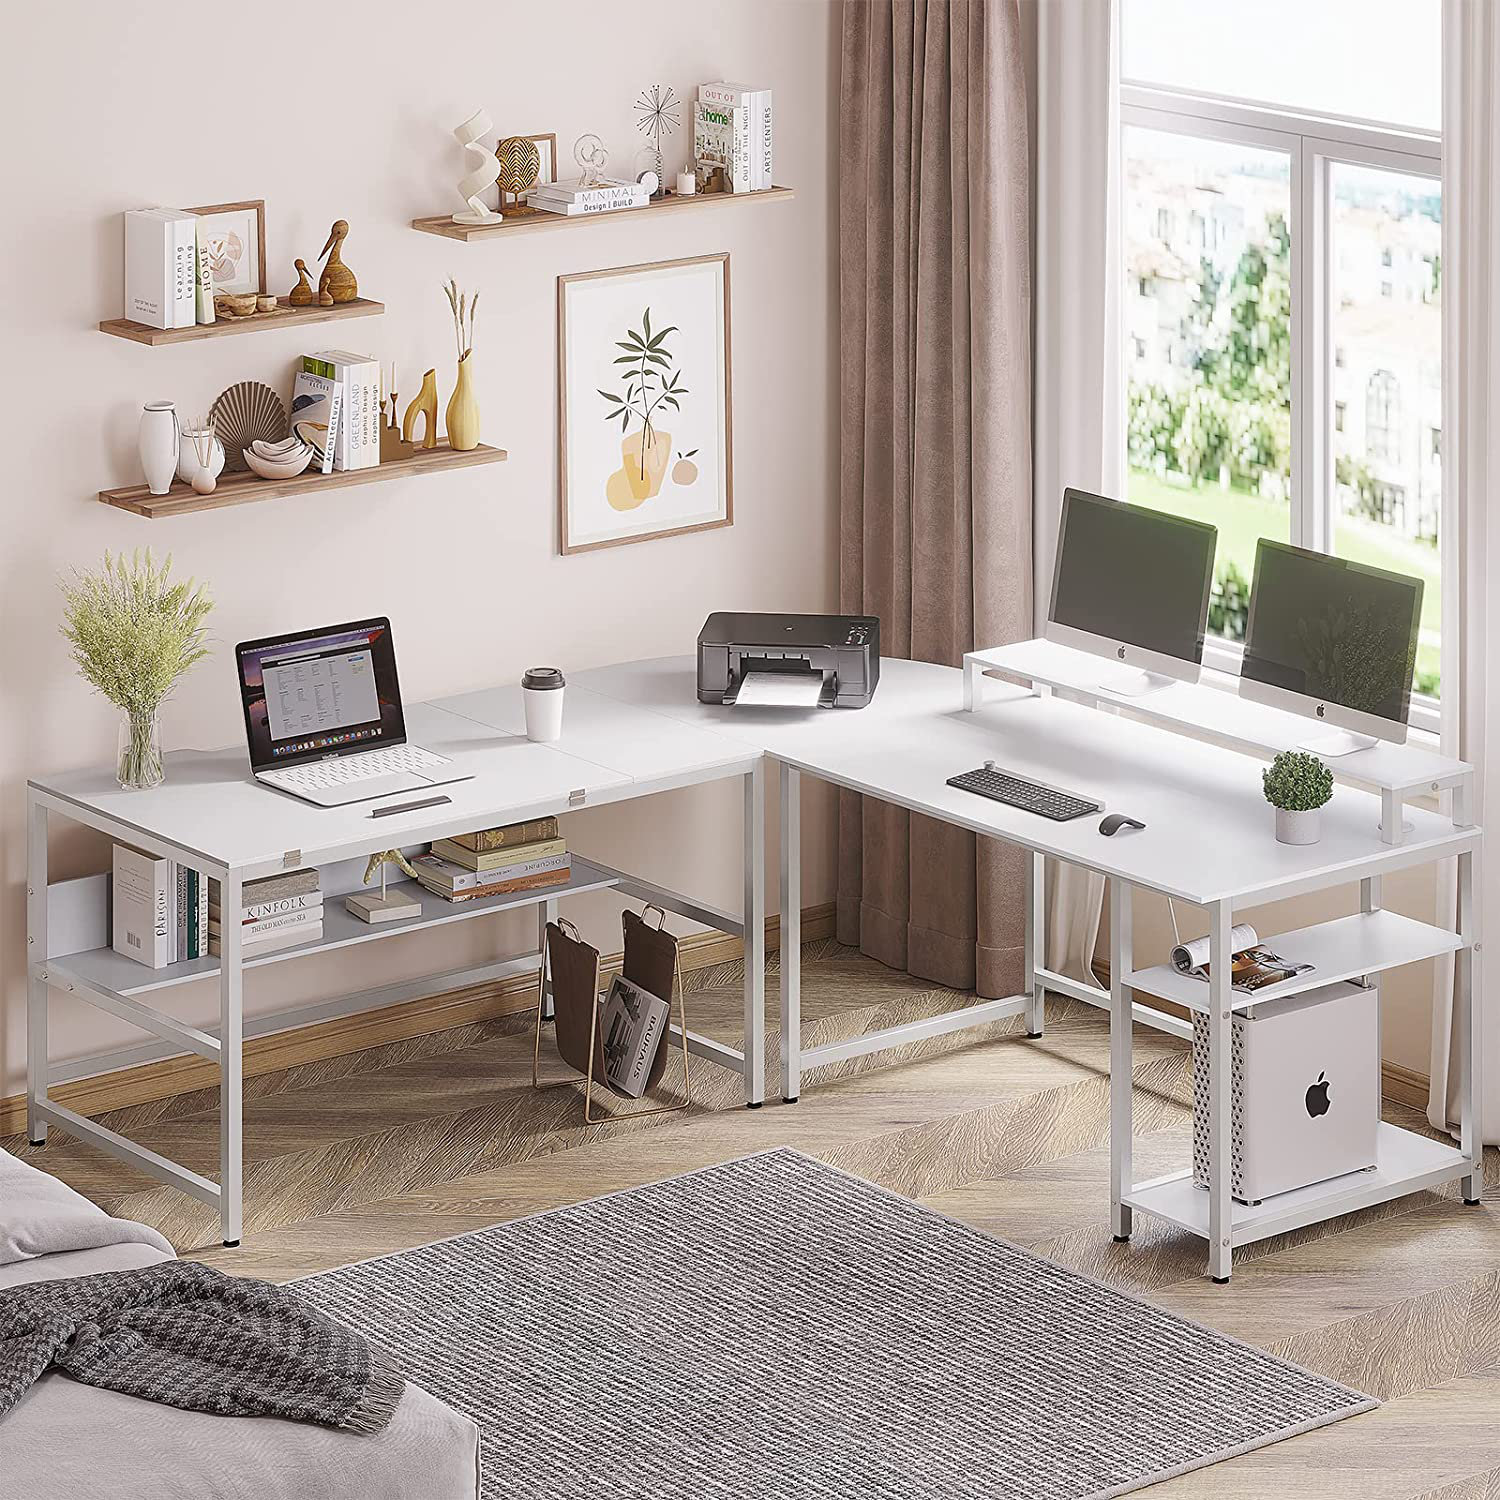 Dumbo Desk, Modular Desk and Shelf Unit